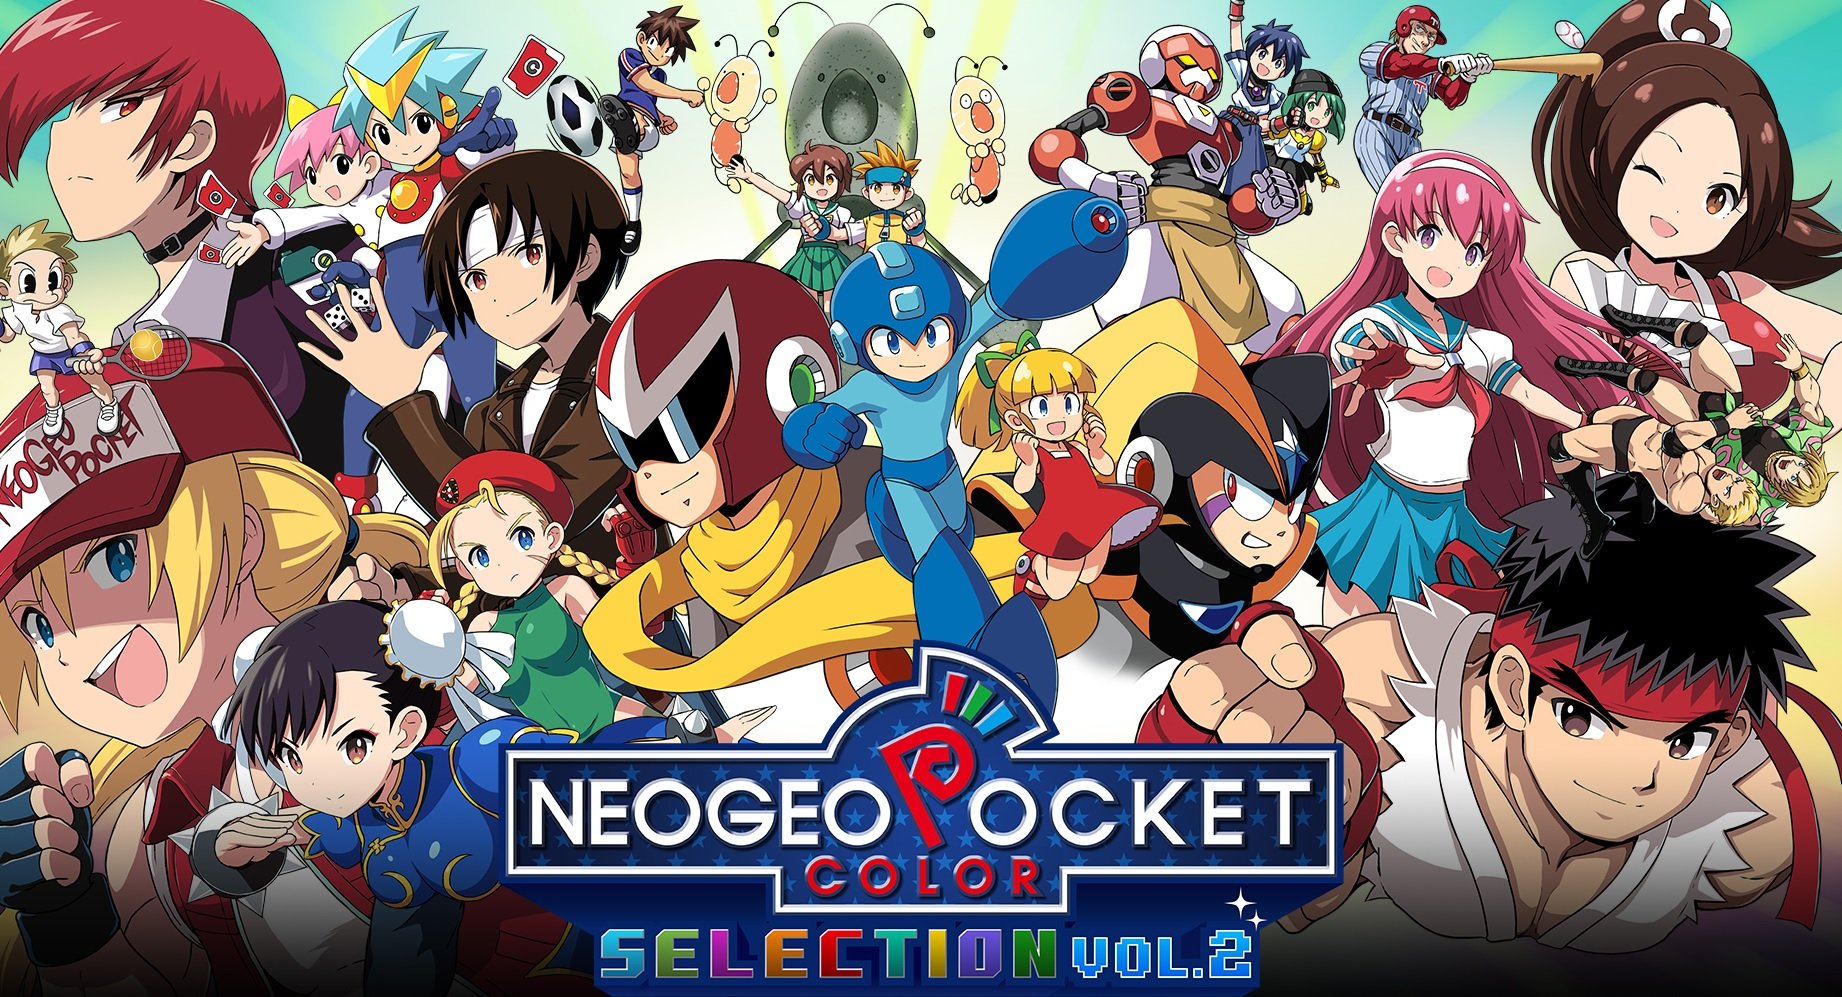 neo geo pocket color selection vol. 2 snk